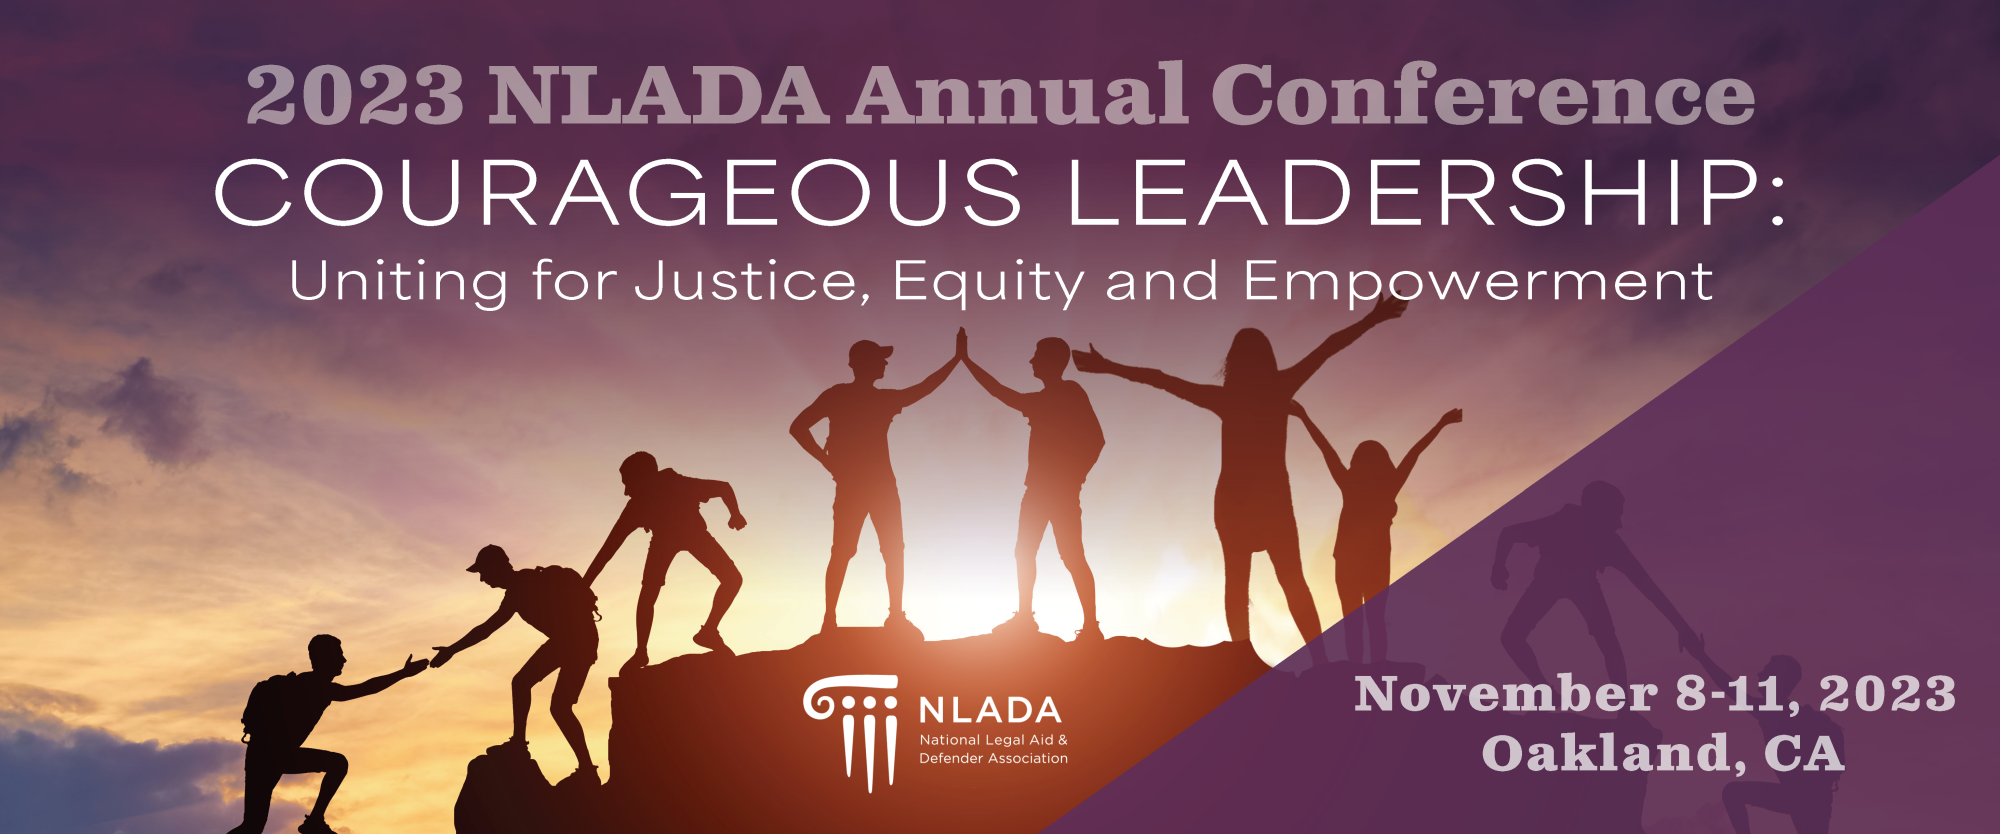 NLADA_AnnualConference